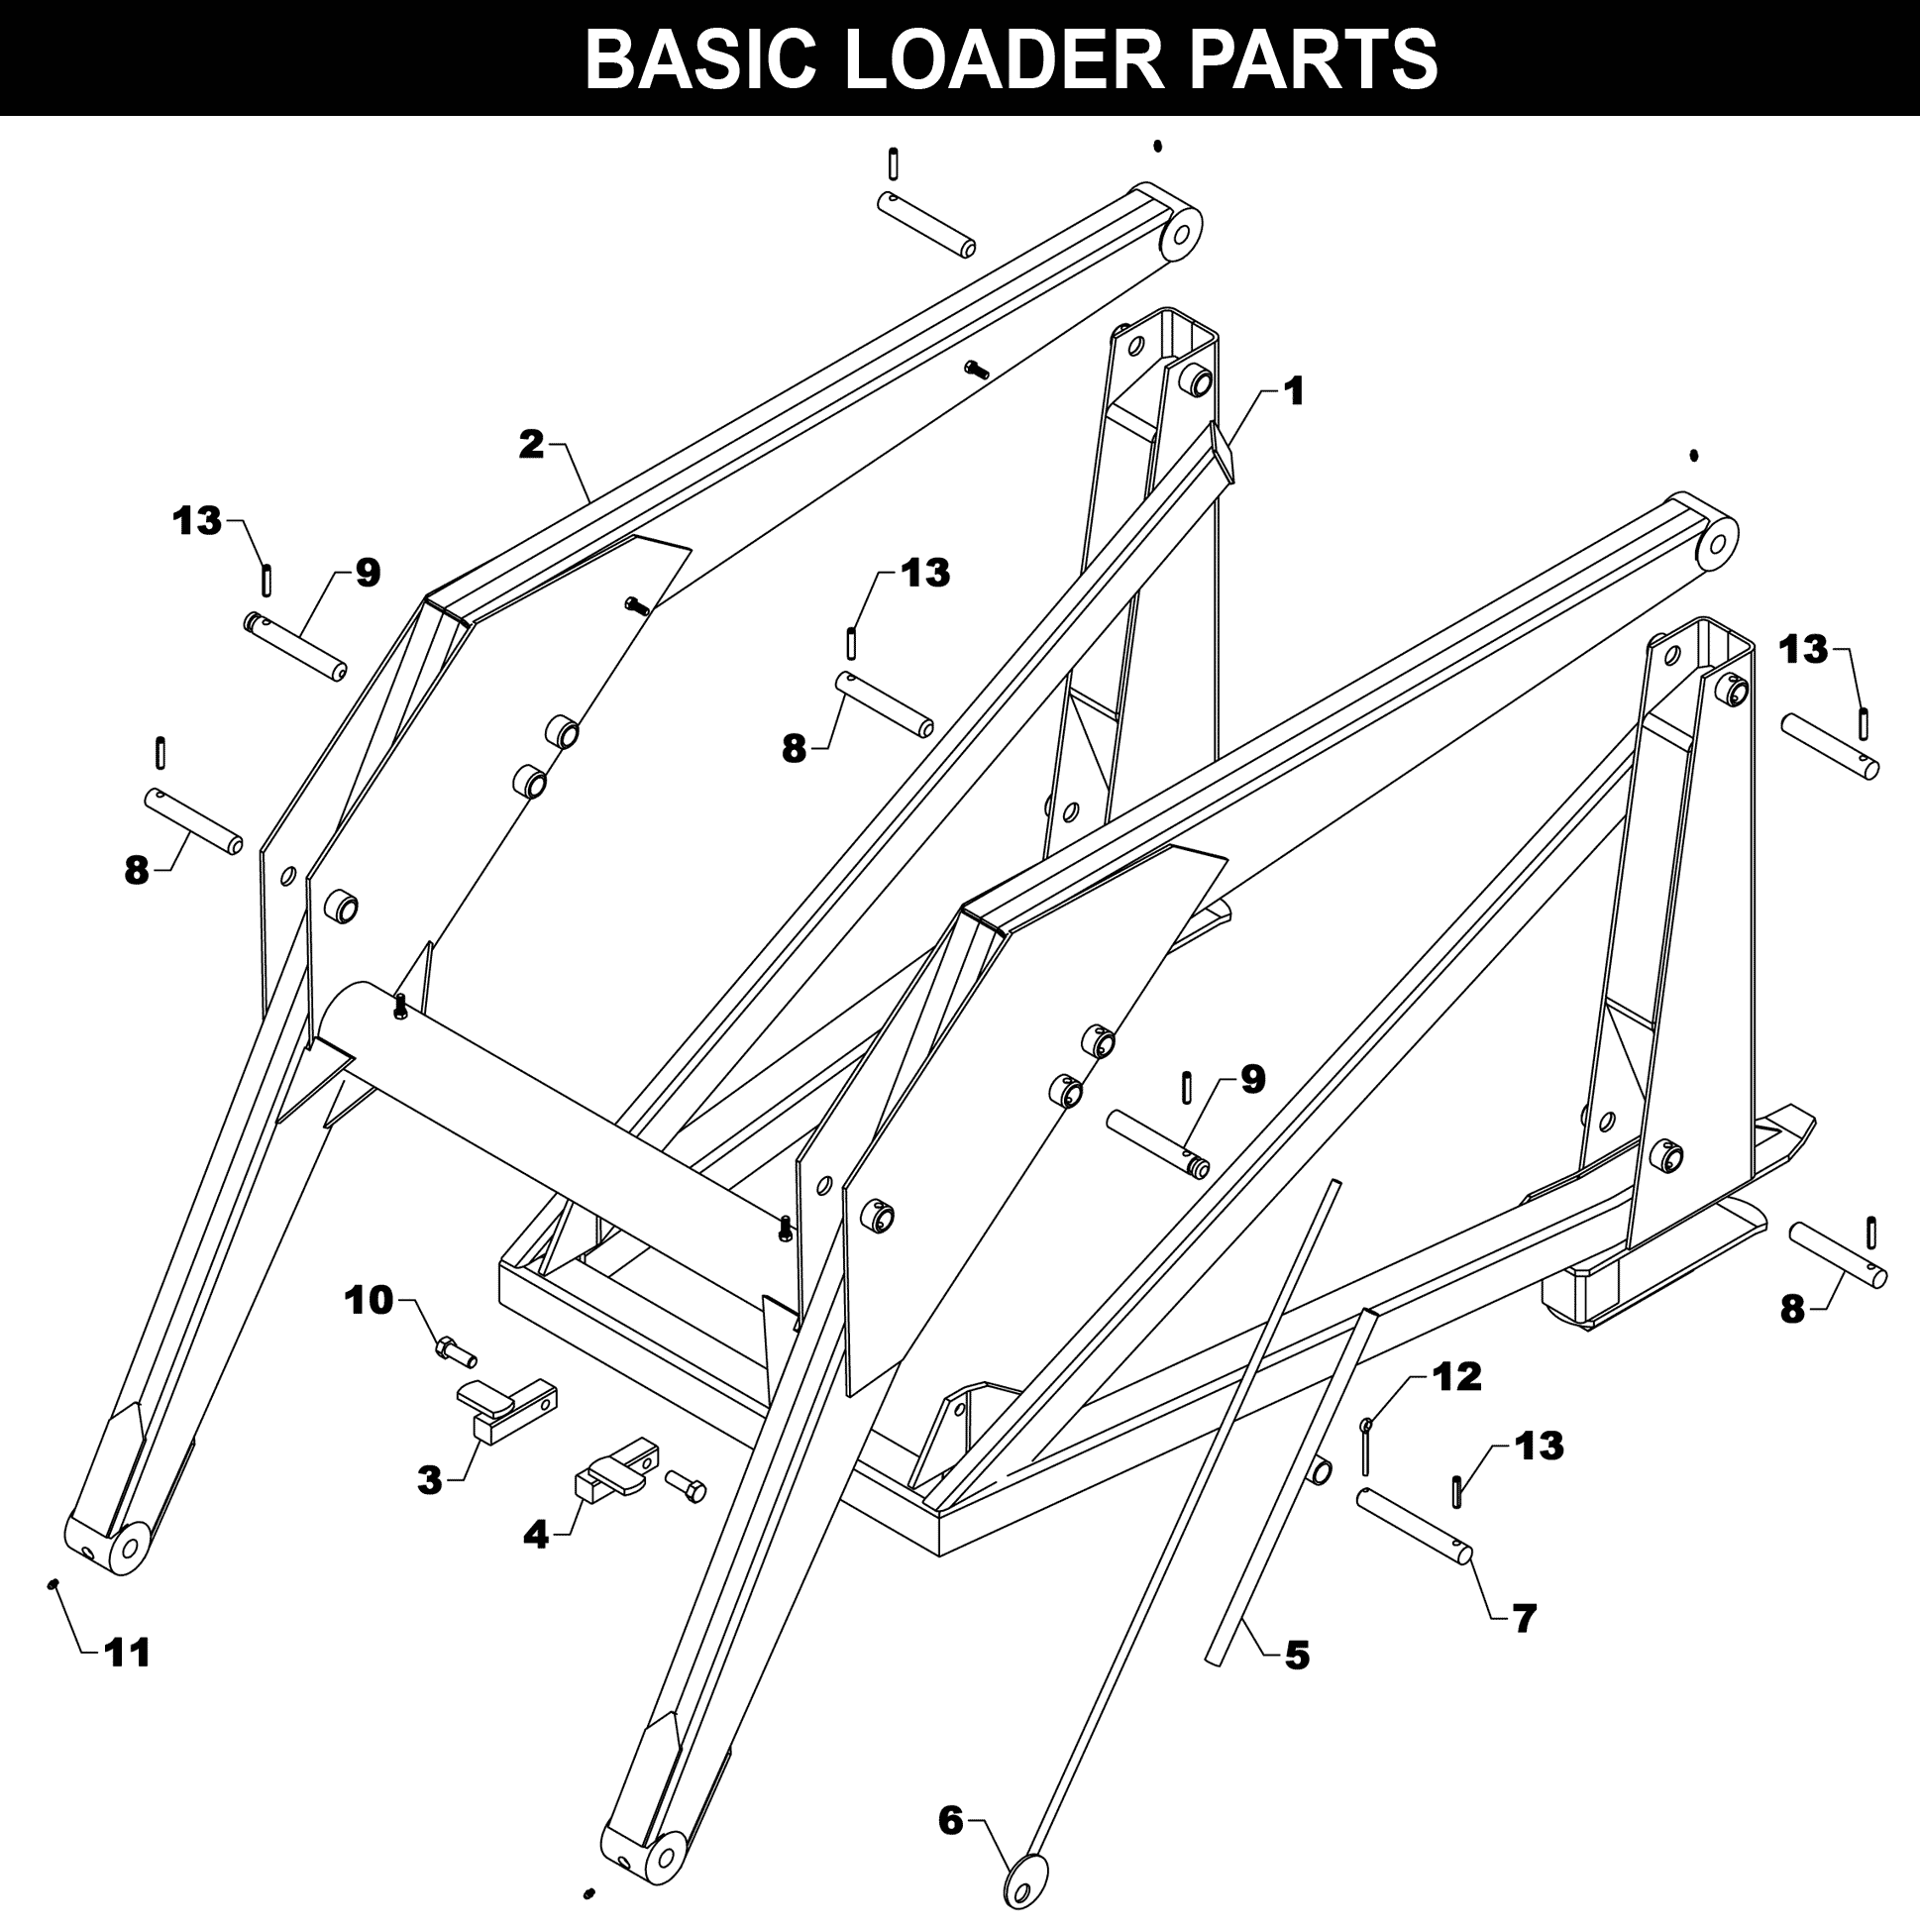 WL-21 Basic Loader Parts